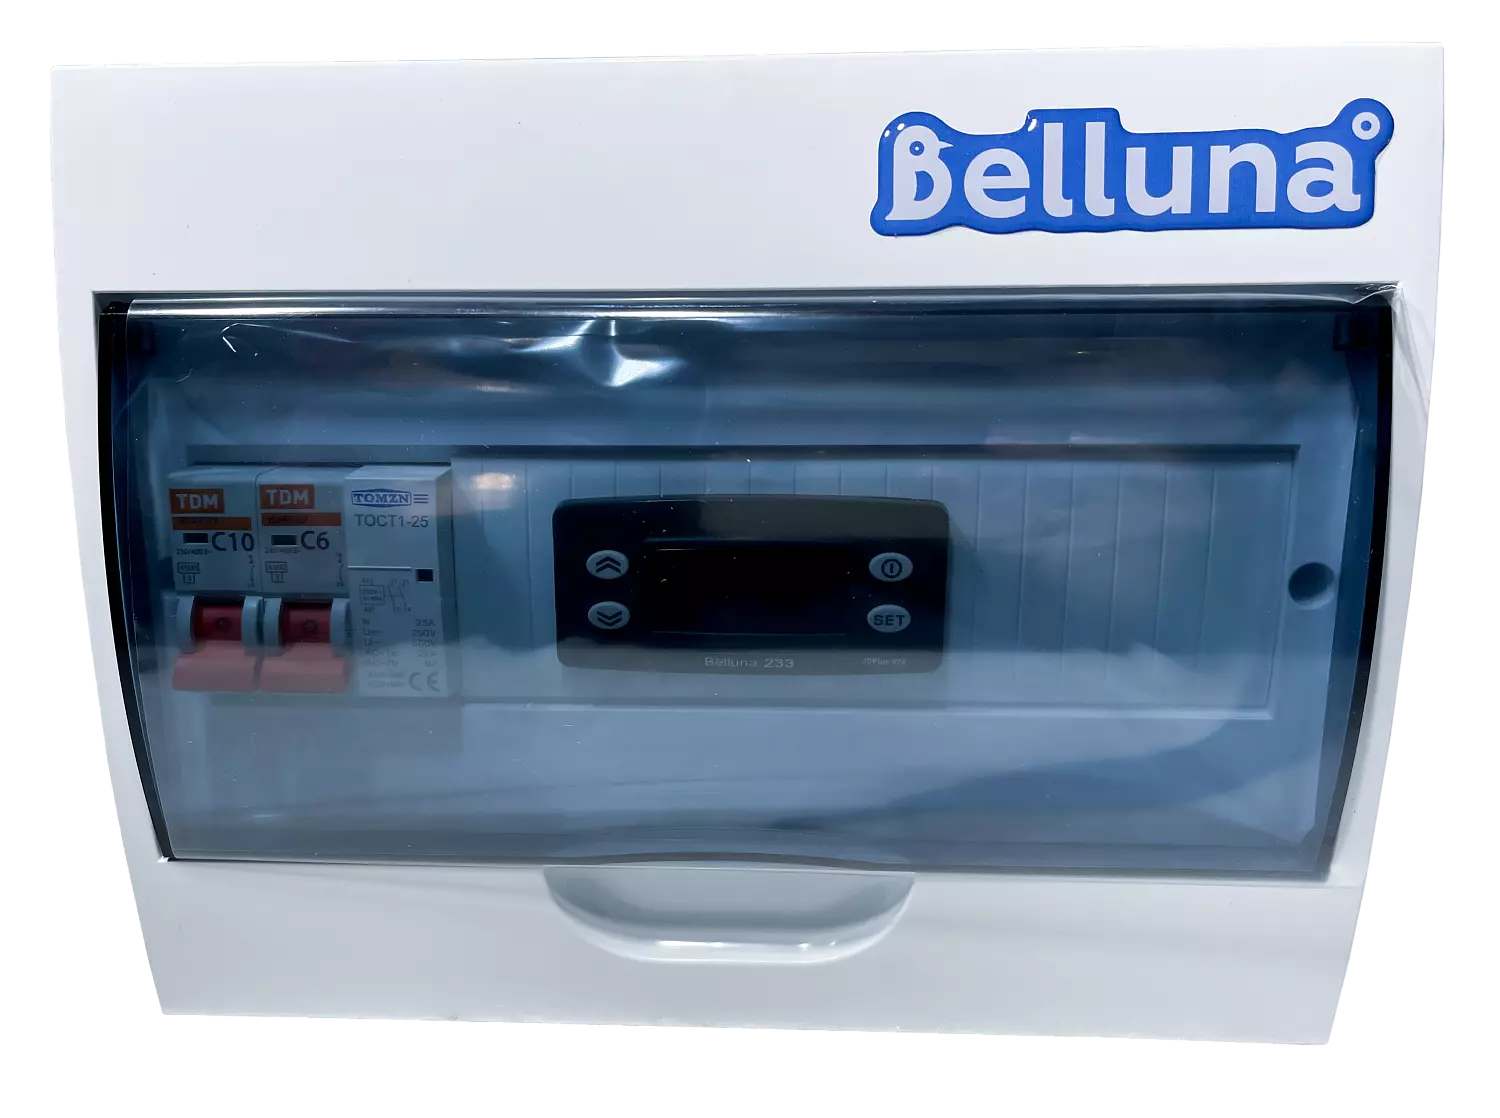 сплит-система Belluna U102-1 Казань